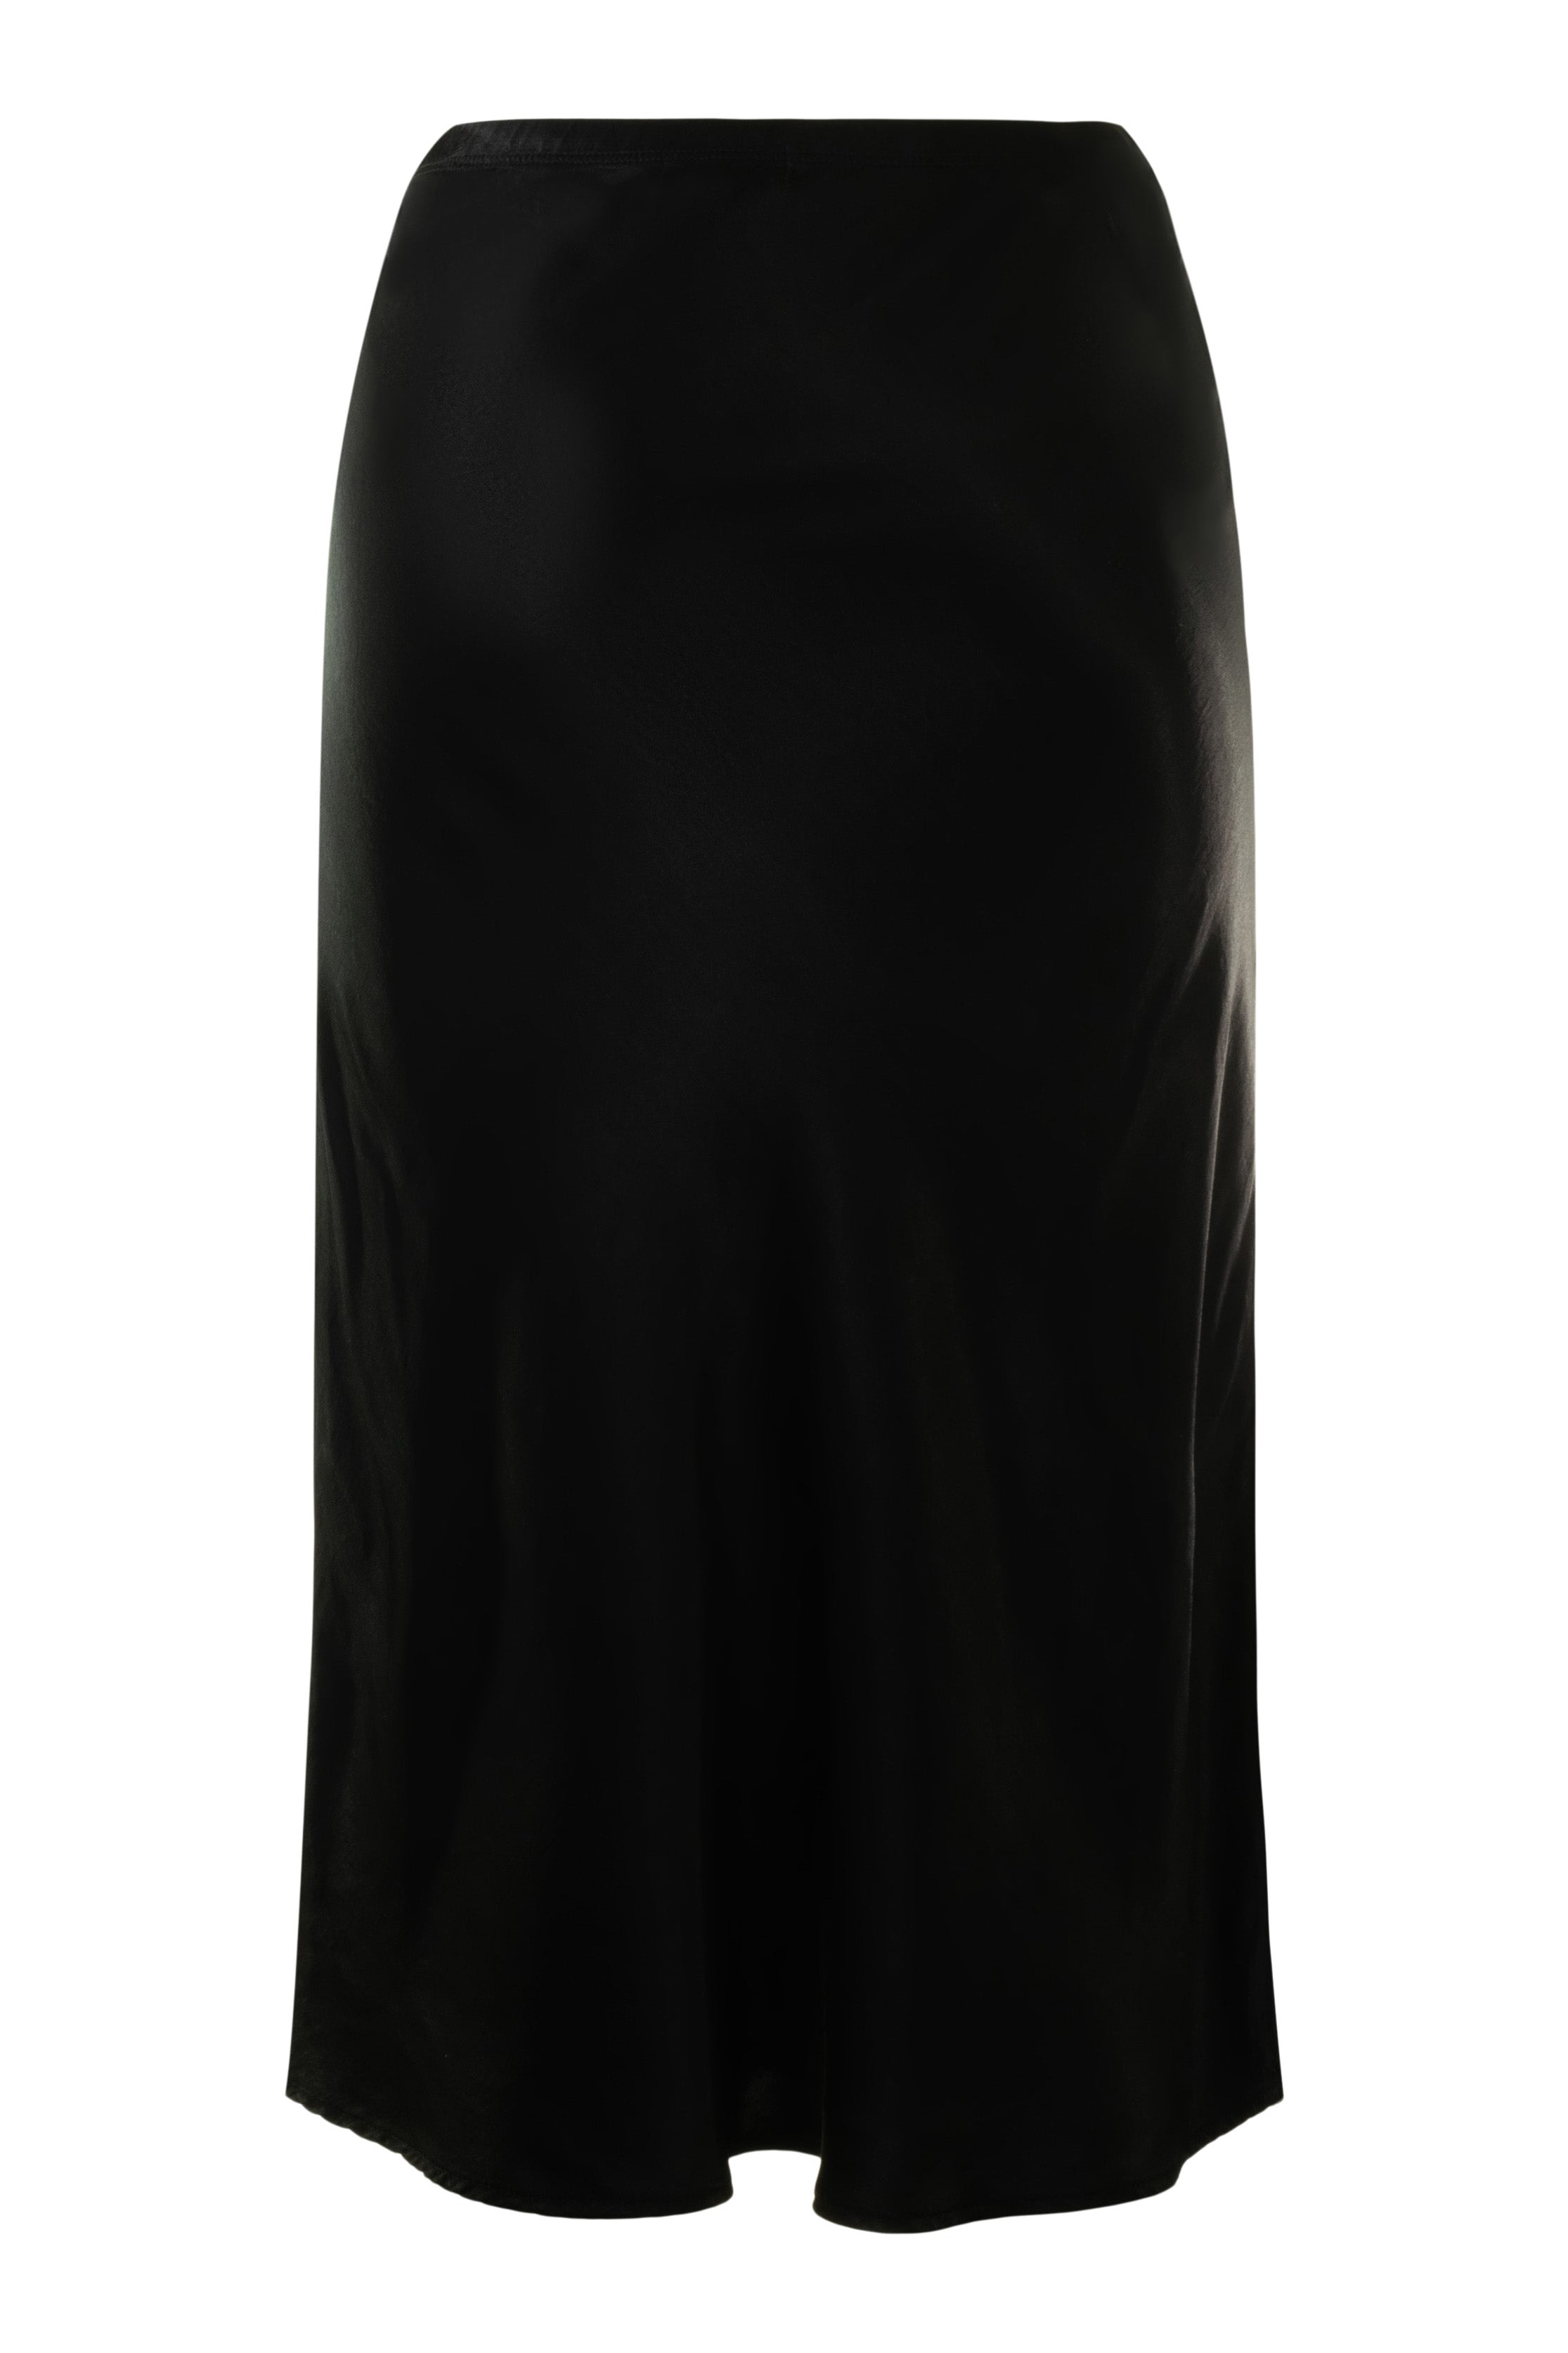 Michael Stars Leila Wrap Skirt in Black